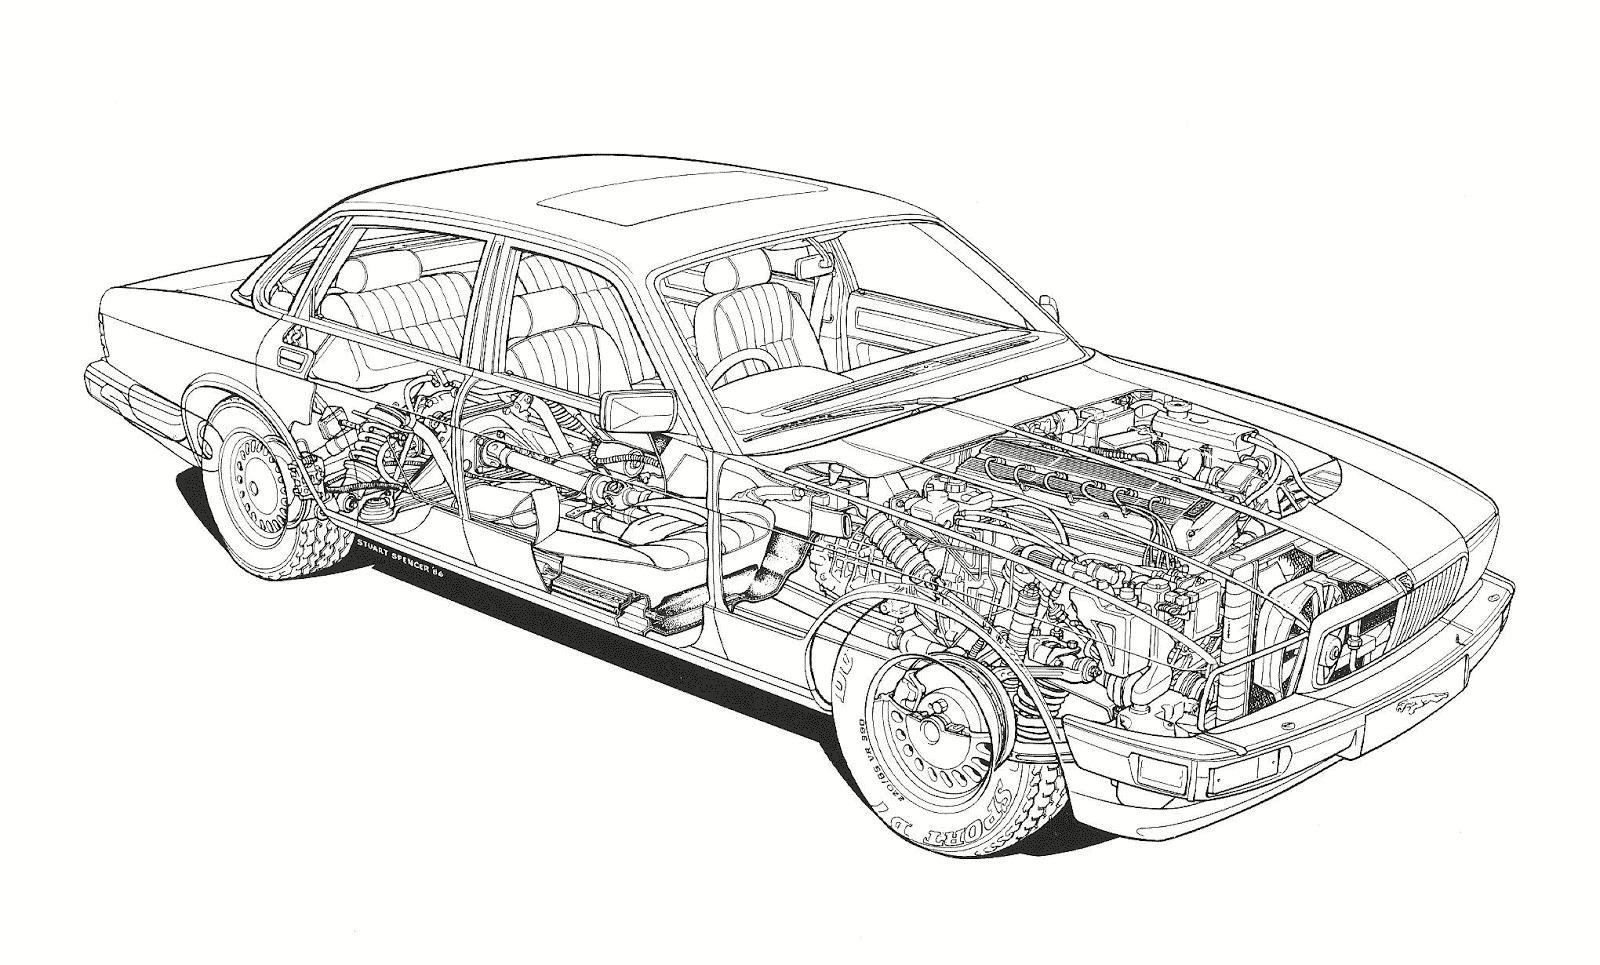 Jaguar XJ40 cutaway